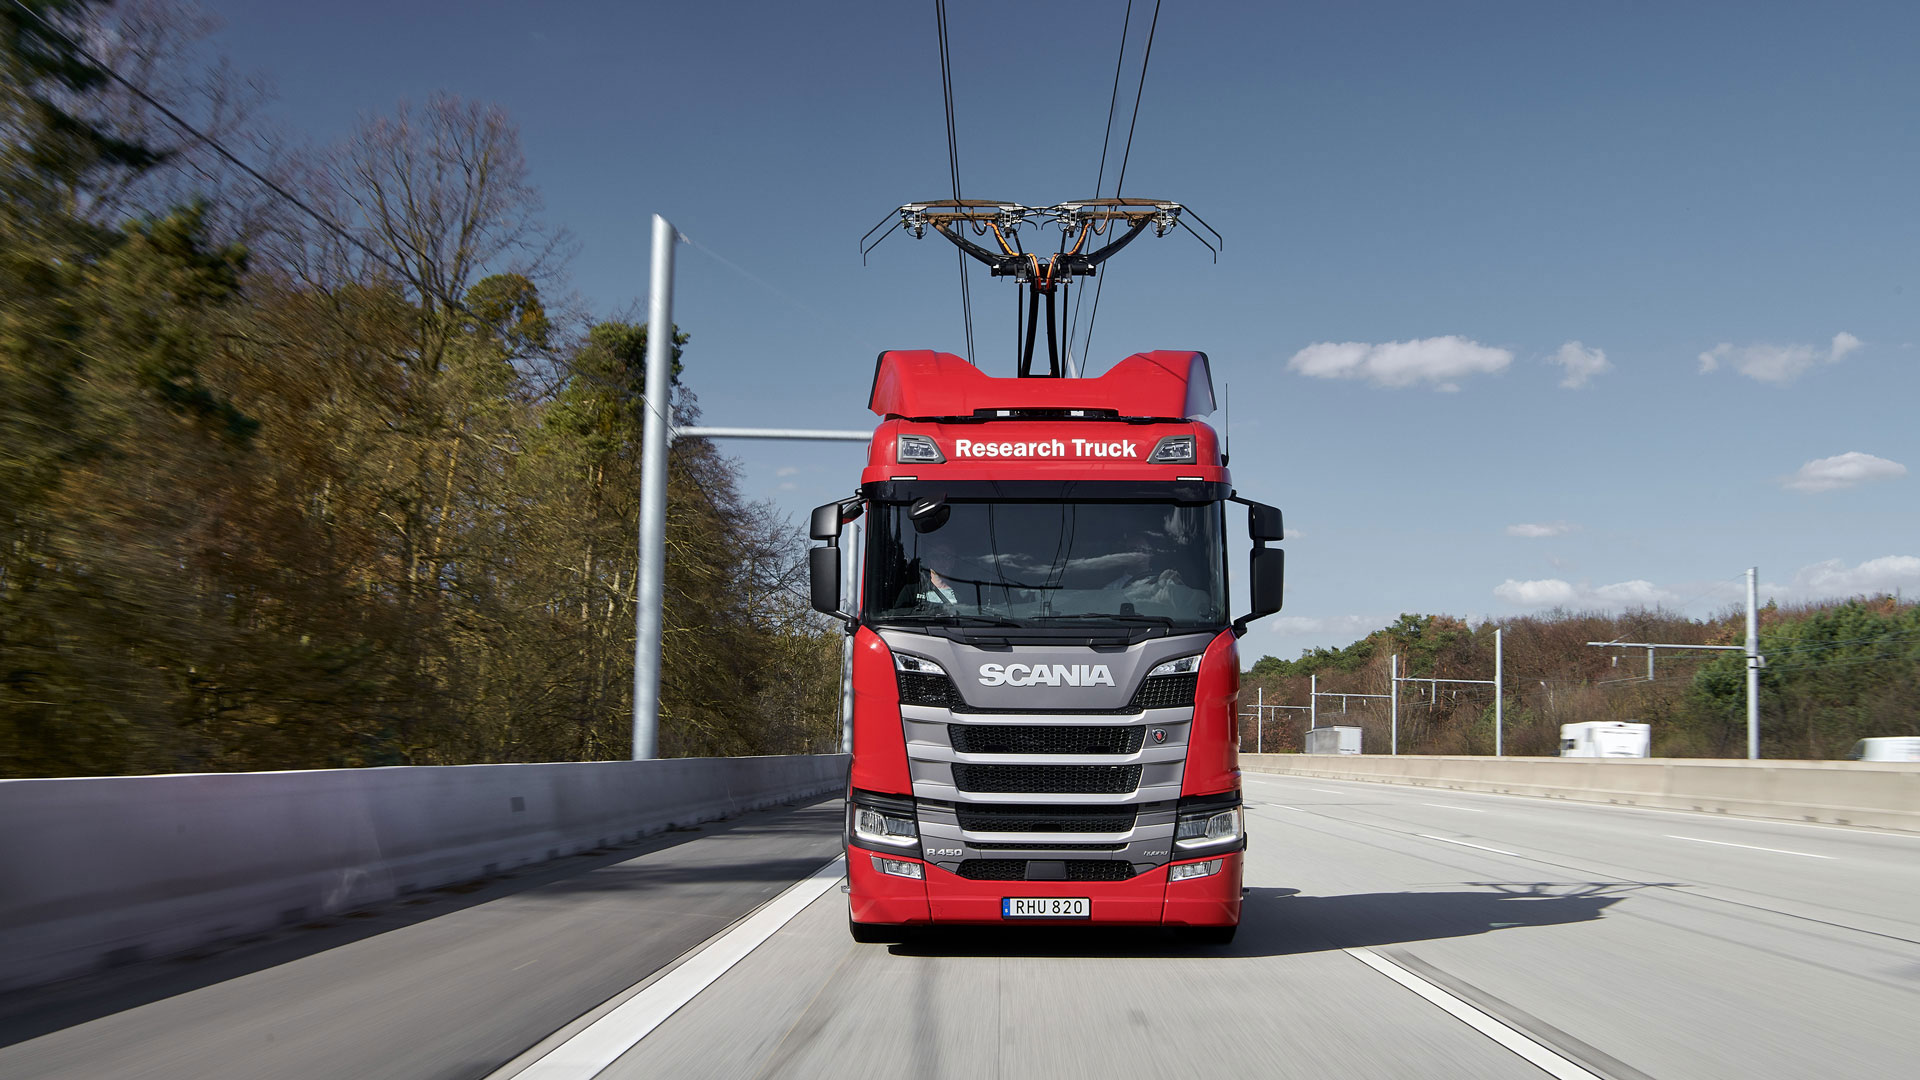 Le modèle R 450 du constructeur suédois Scania a été équipé de pantographes en collaboration avec l’allemand Siemens.